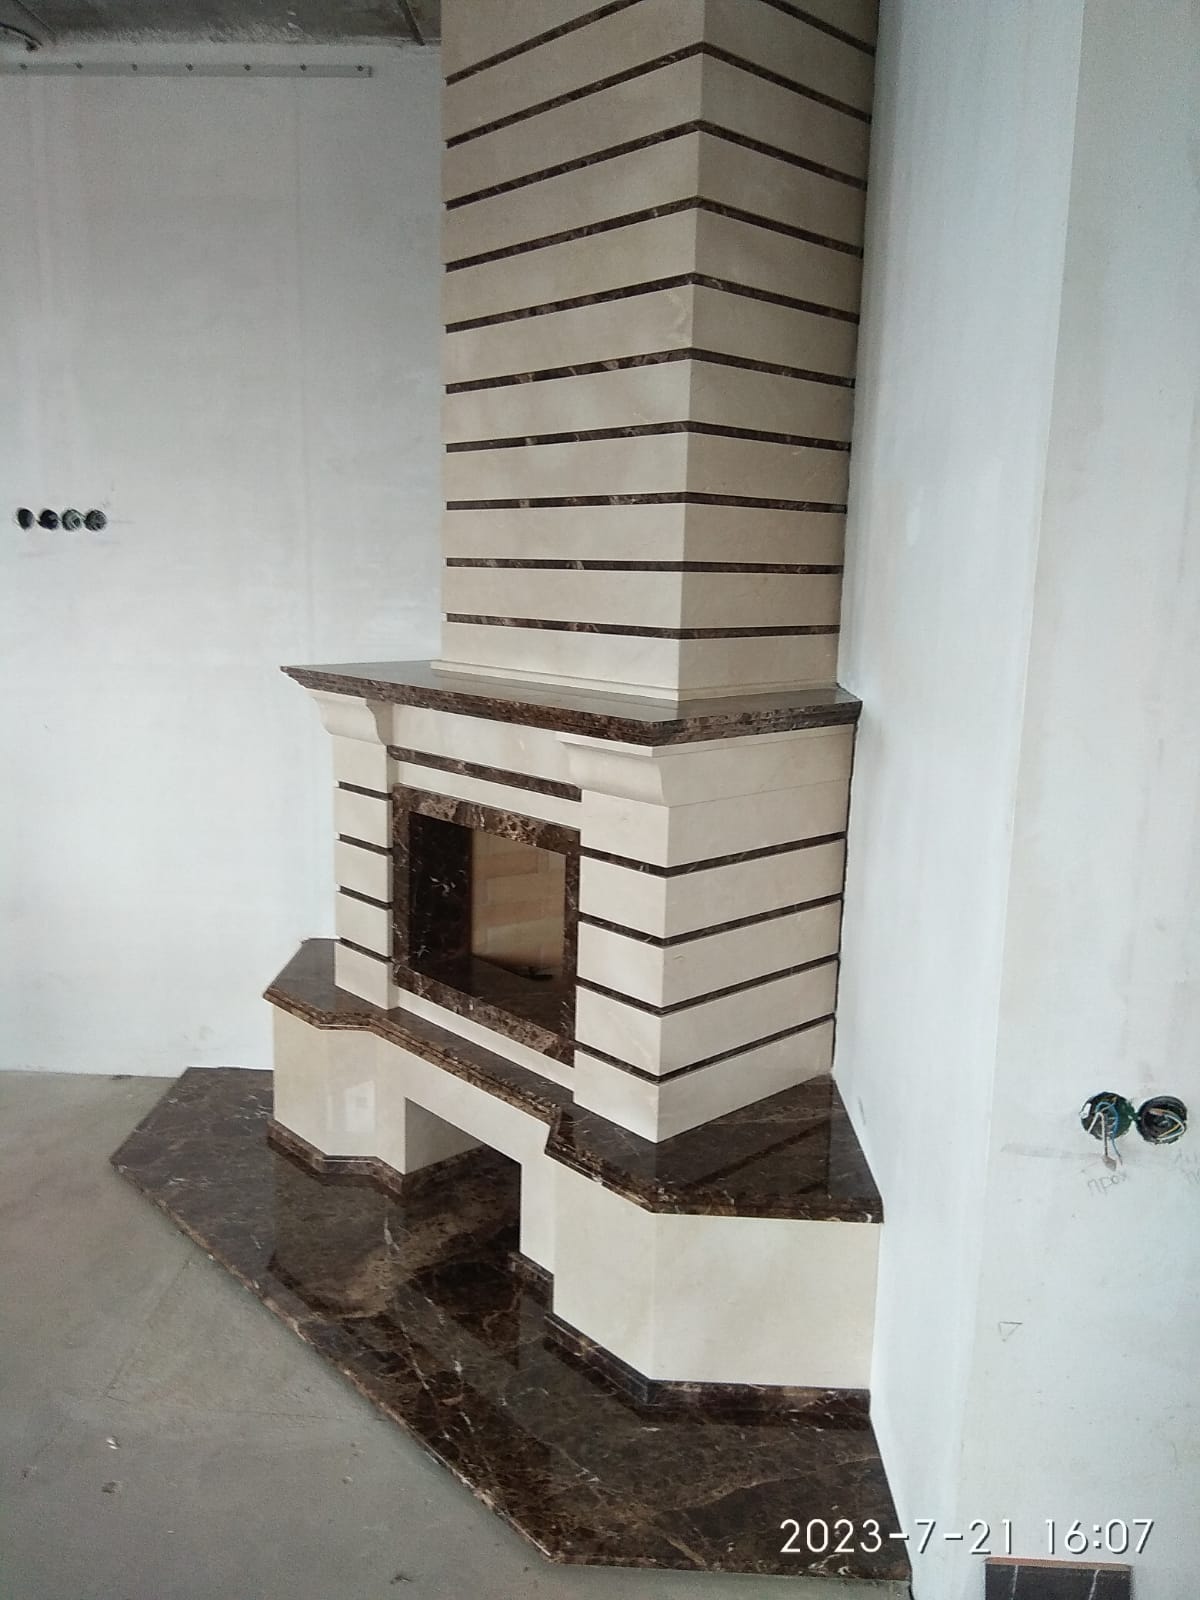 Интересного дизайна мраморный камин с подиумом и коробом в облицовке камнем.